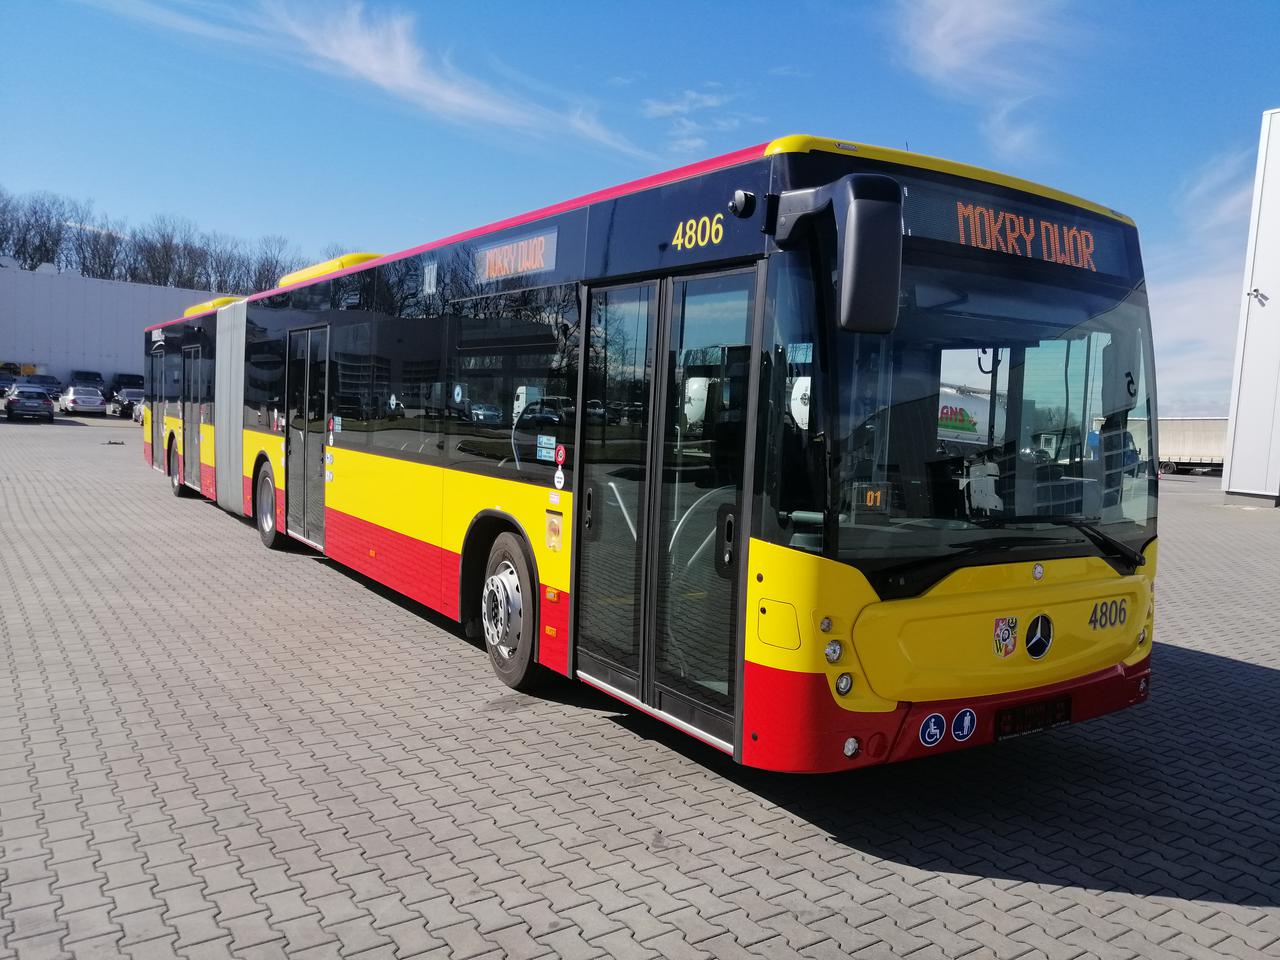 Wrocław: Tak wyglądają nowe autobusy. Od jutra będą jeździć na trzech liniach [ZDJĘCIA]